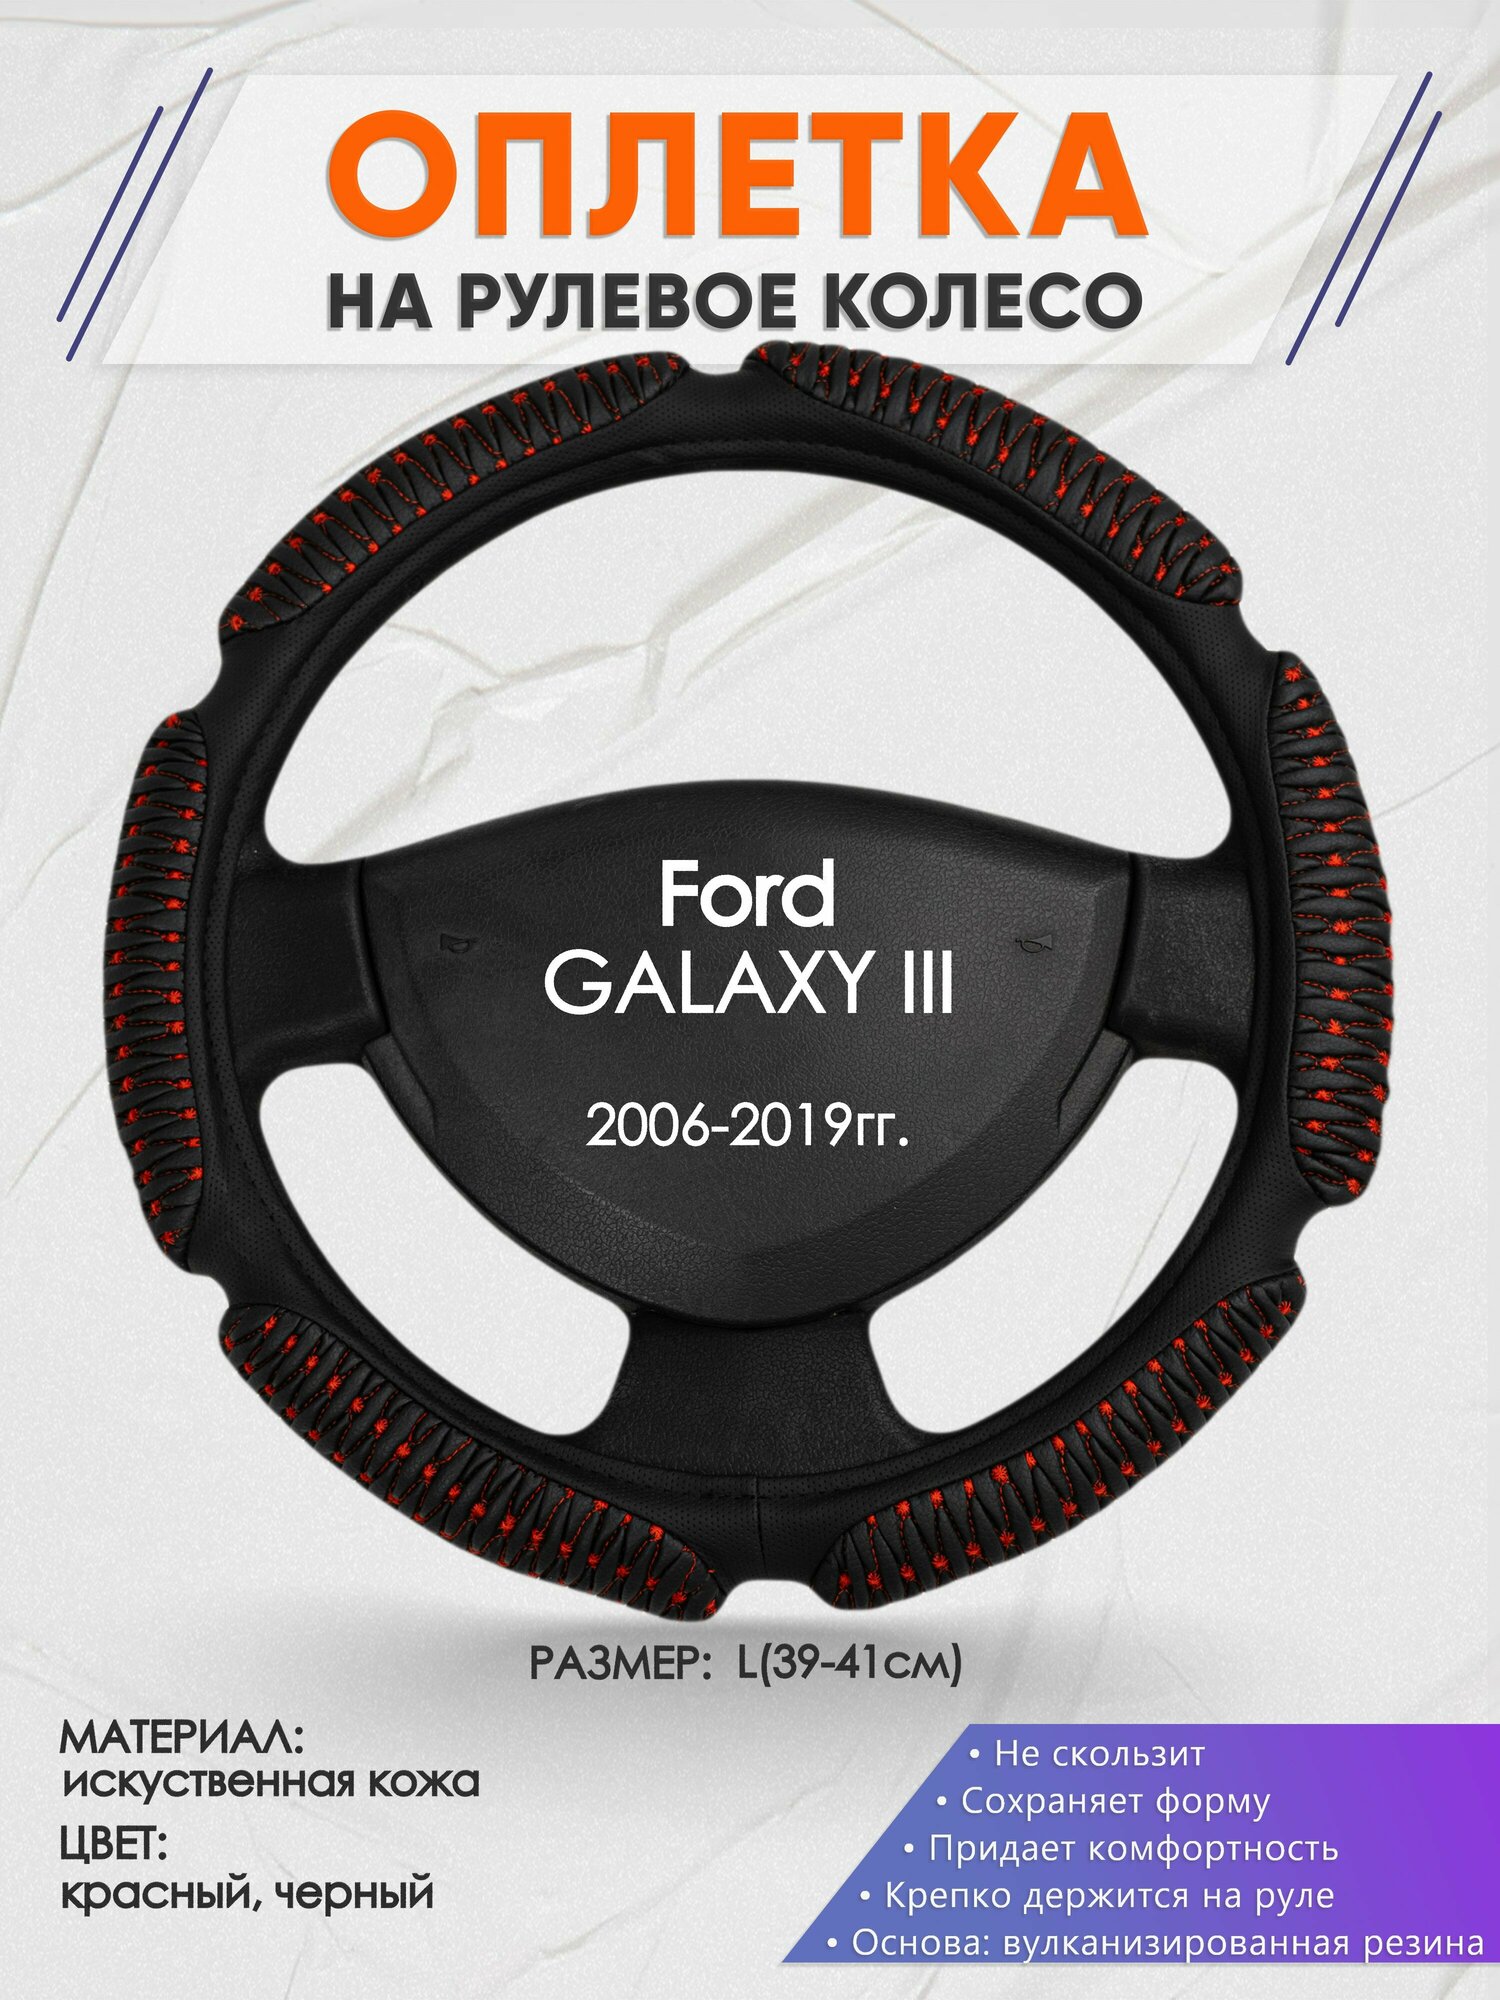 Оплетка на руль для Ford GALAXY 3(Форд Галакси) 2006-2019, L(39-41см), Искусственная кожа 01